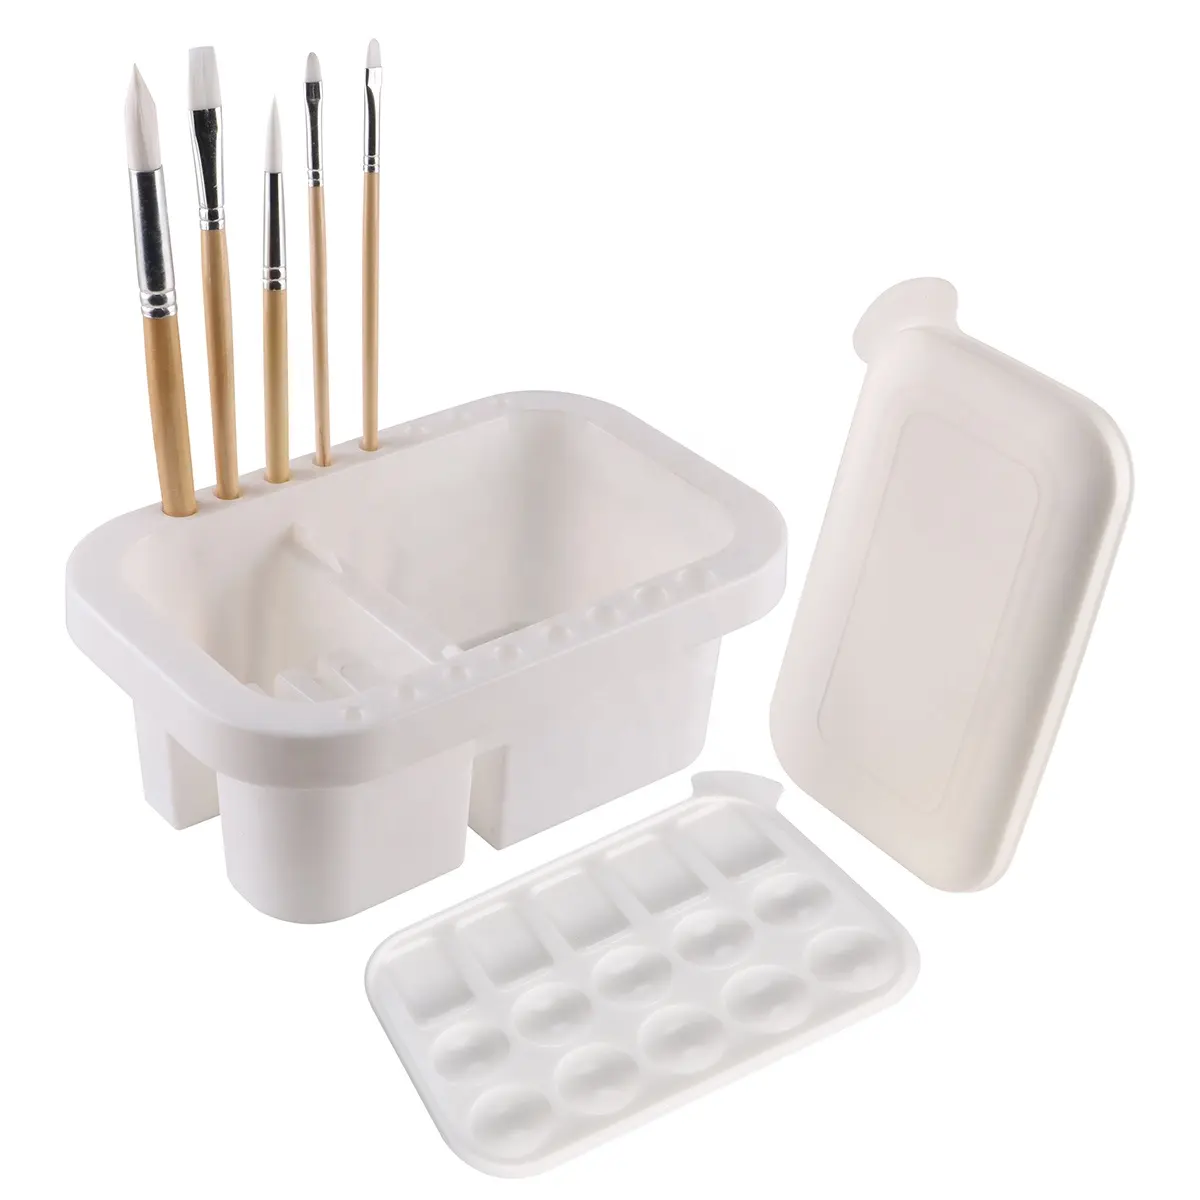 Cepillos de plástico para limpieza de pintura, accesorios de arte multifuncionales, portátil, con una paleta y una cubierta